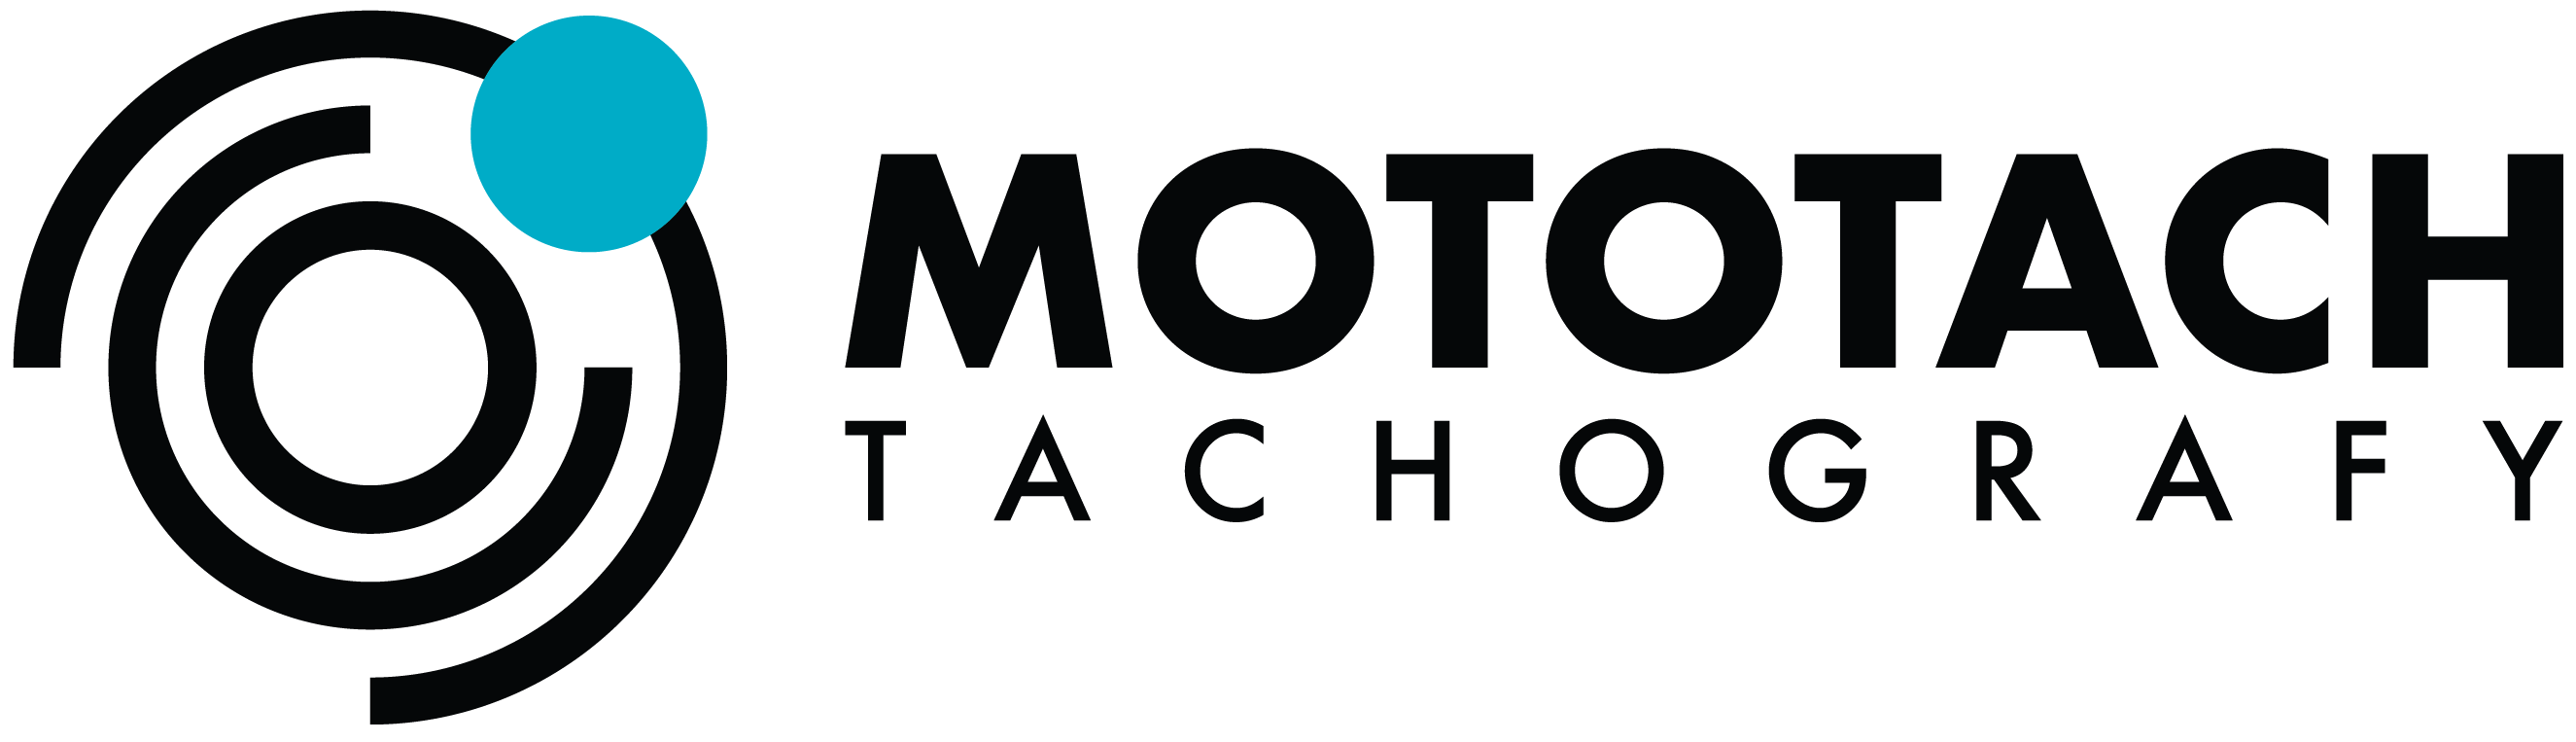 Mototach logo